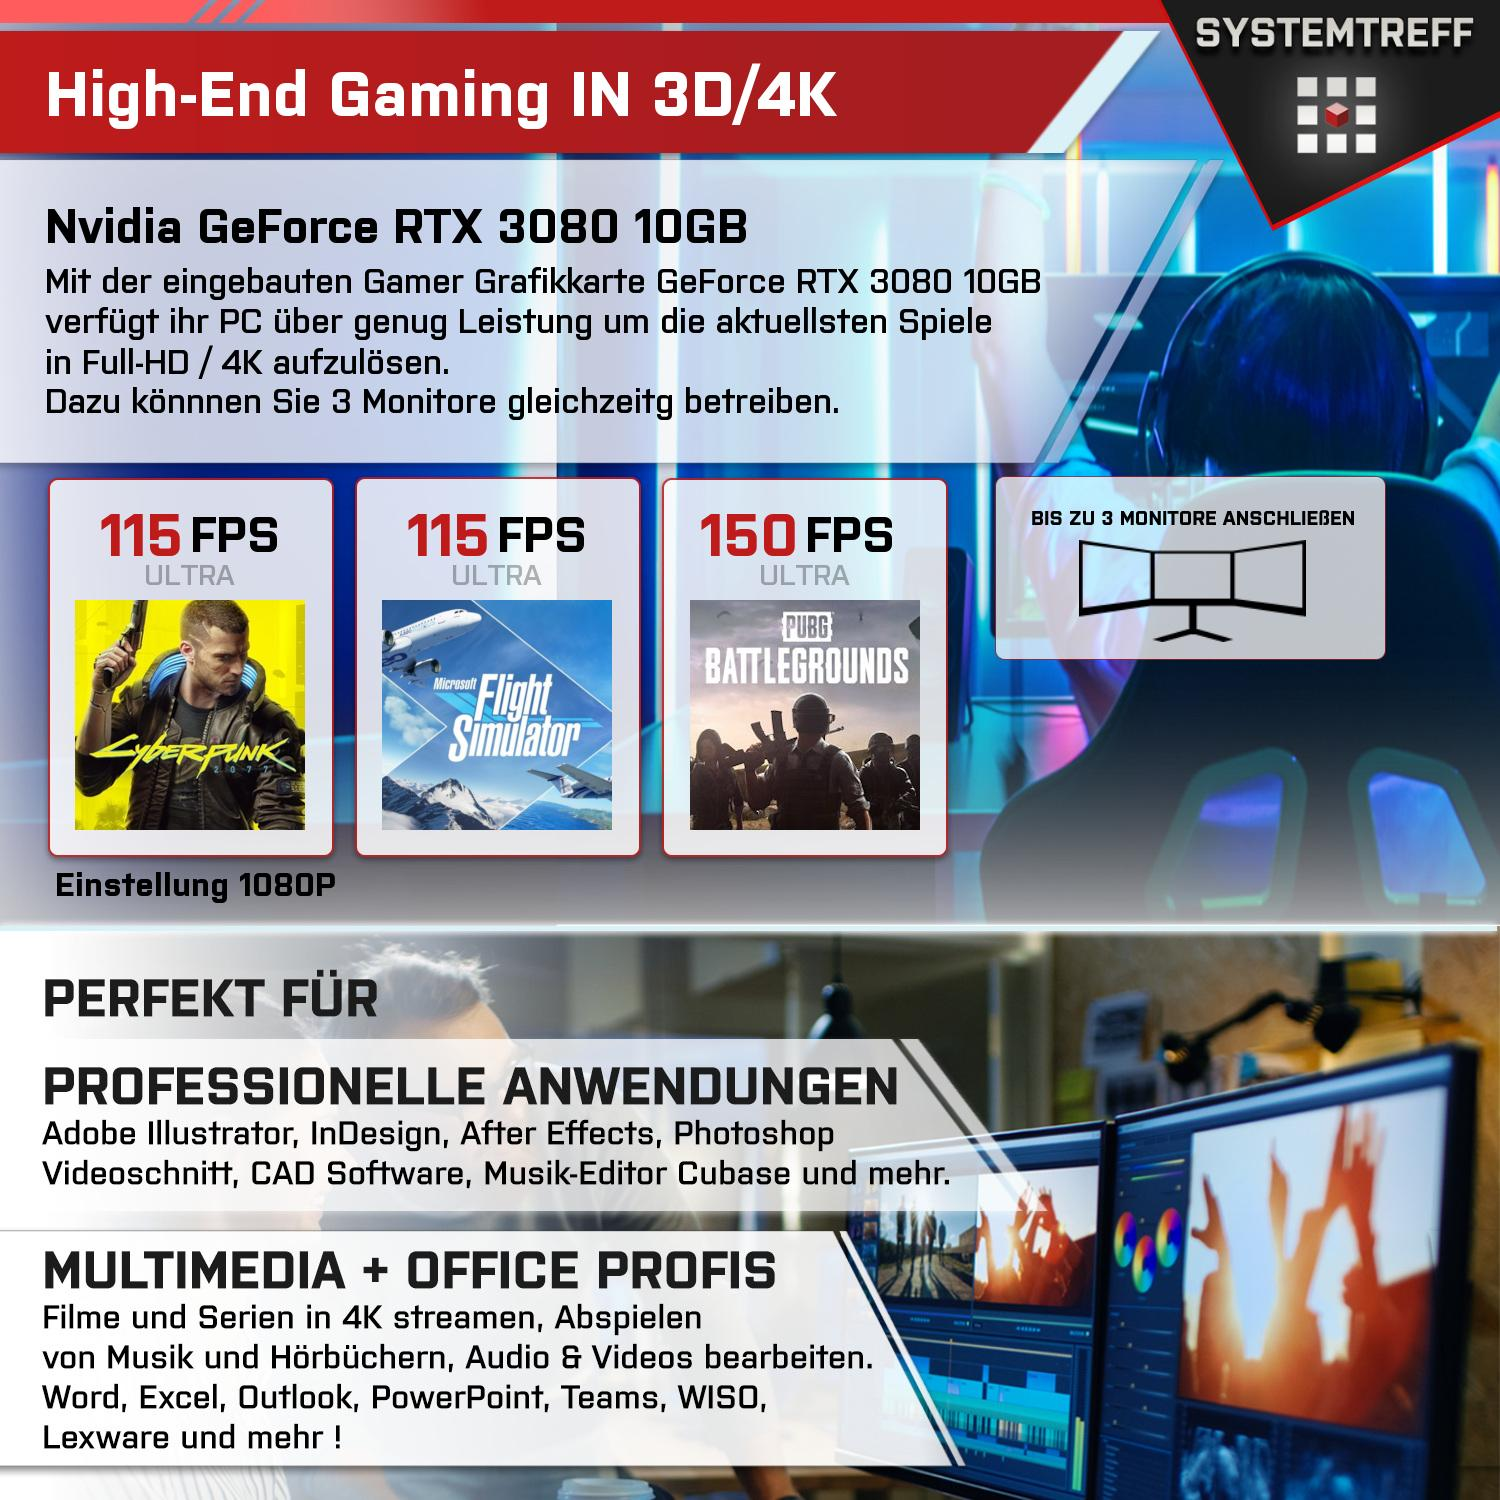 SYSTEMTREFF Gaming Komplett AMD Ryzen Komplett PC 3080 9 32 GeForce 7900 7900, GB 1000 10GB Prozessor, GB RTX GB mit RAM, GDDR6X, mSSD, Nvidia 10